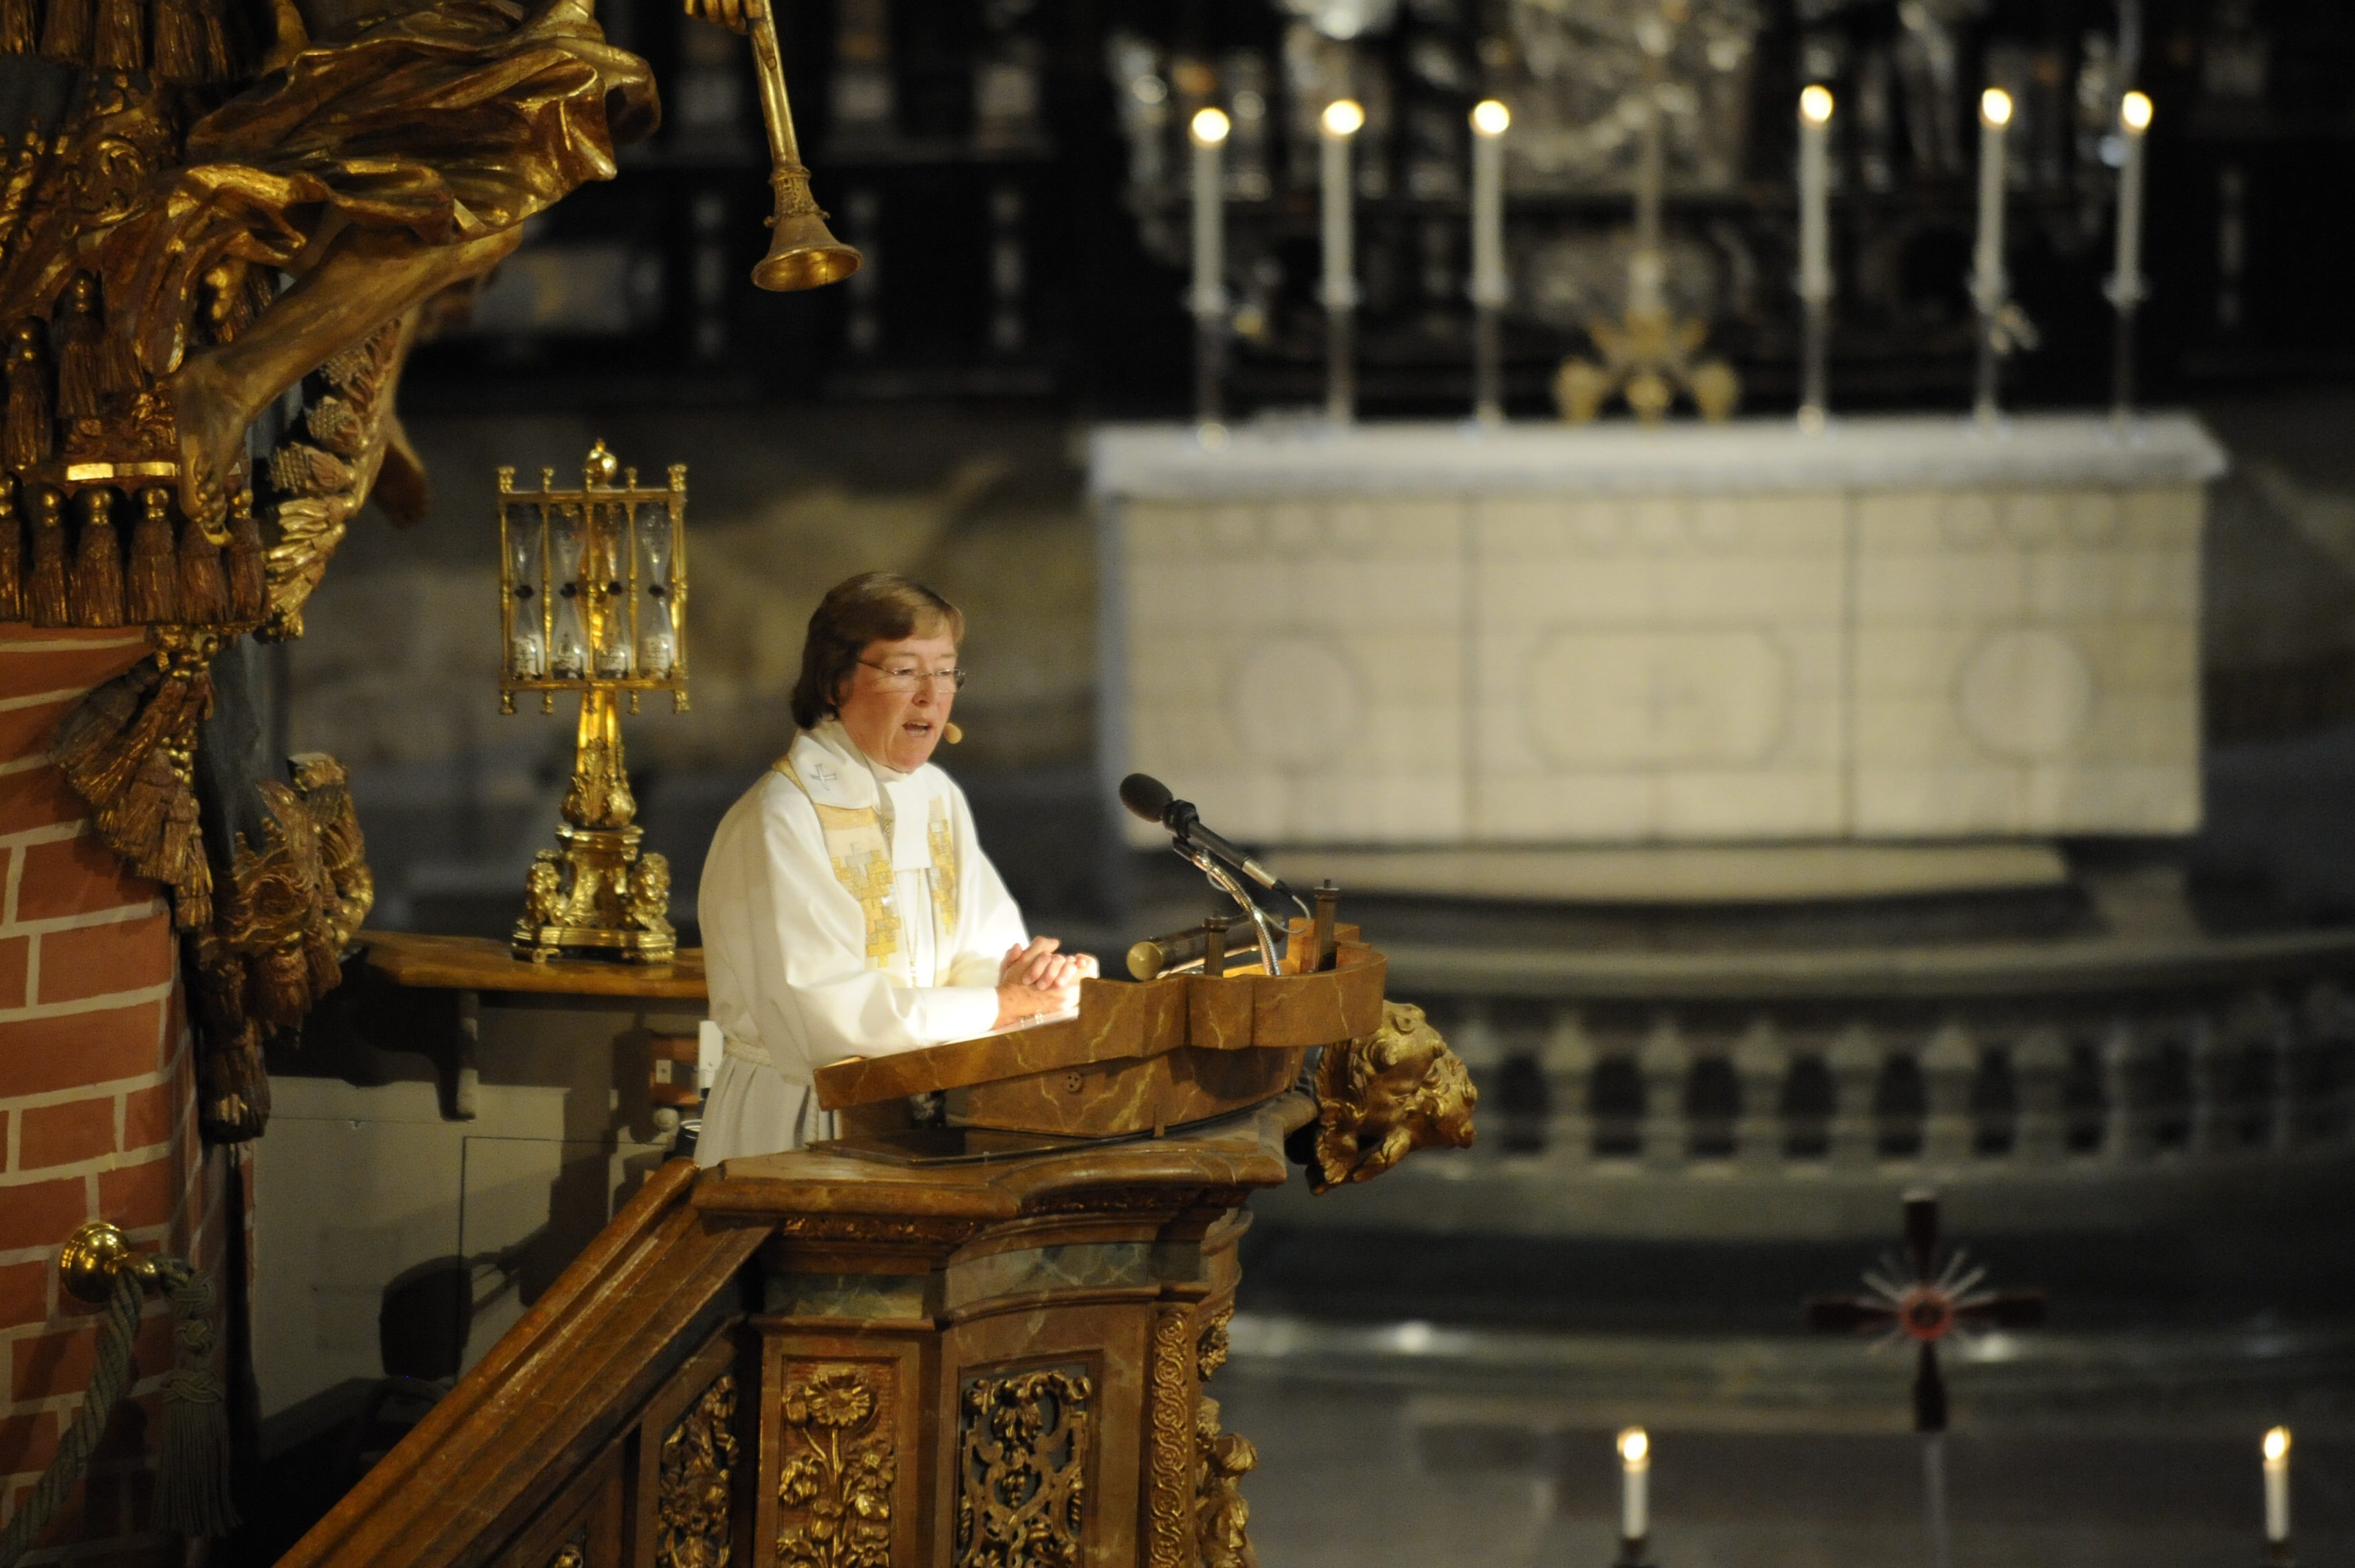 Biskop Eva Brunnes predikan under gudstjänst i Storkyrkan i Gamla stan inför riksmötets öppnande.